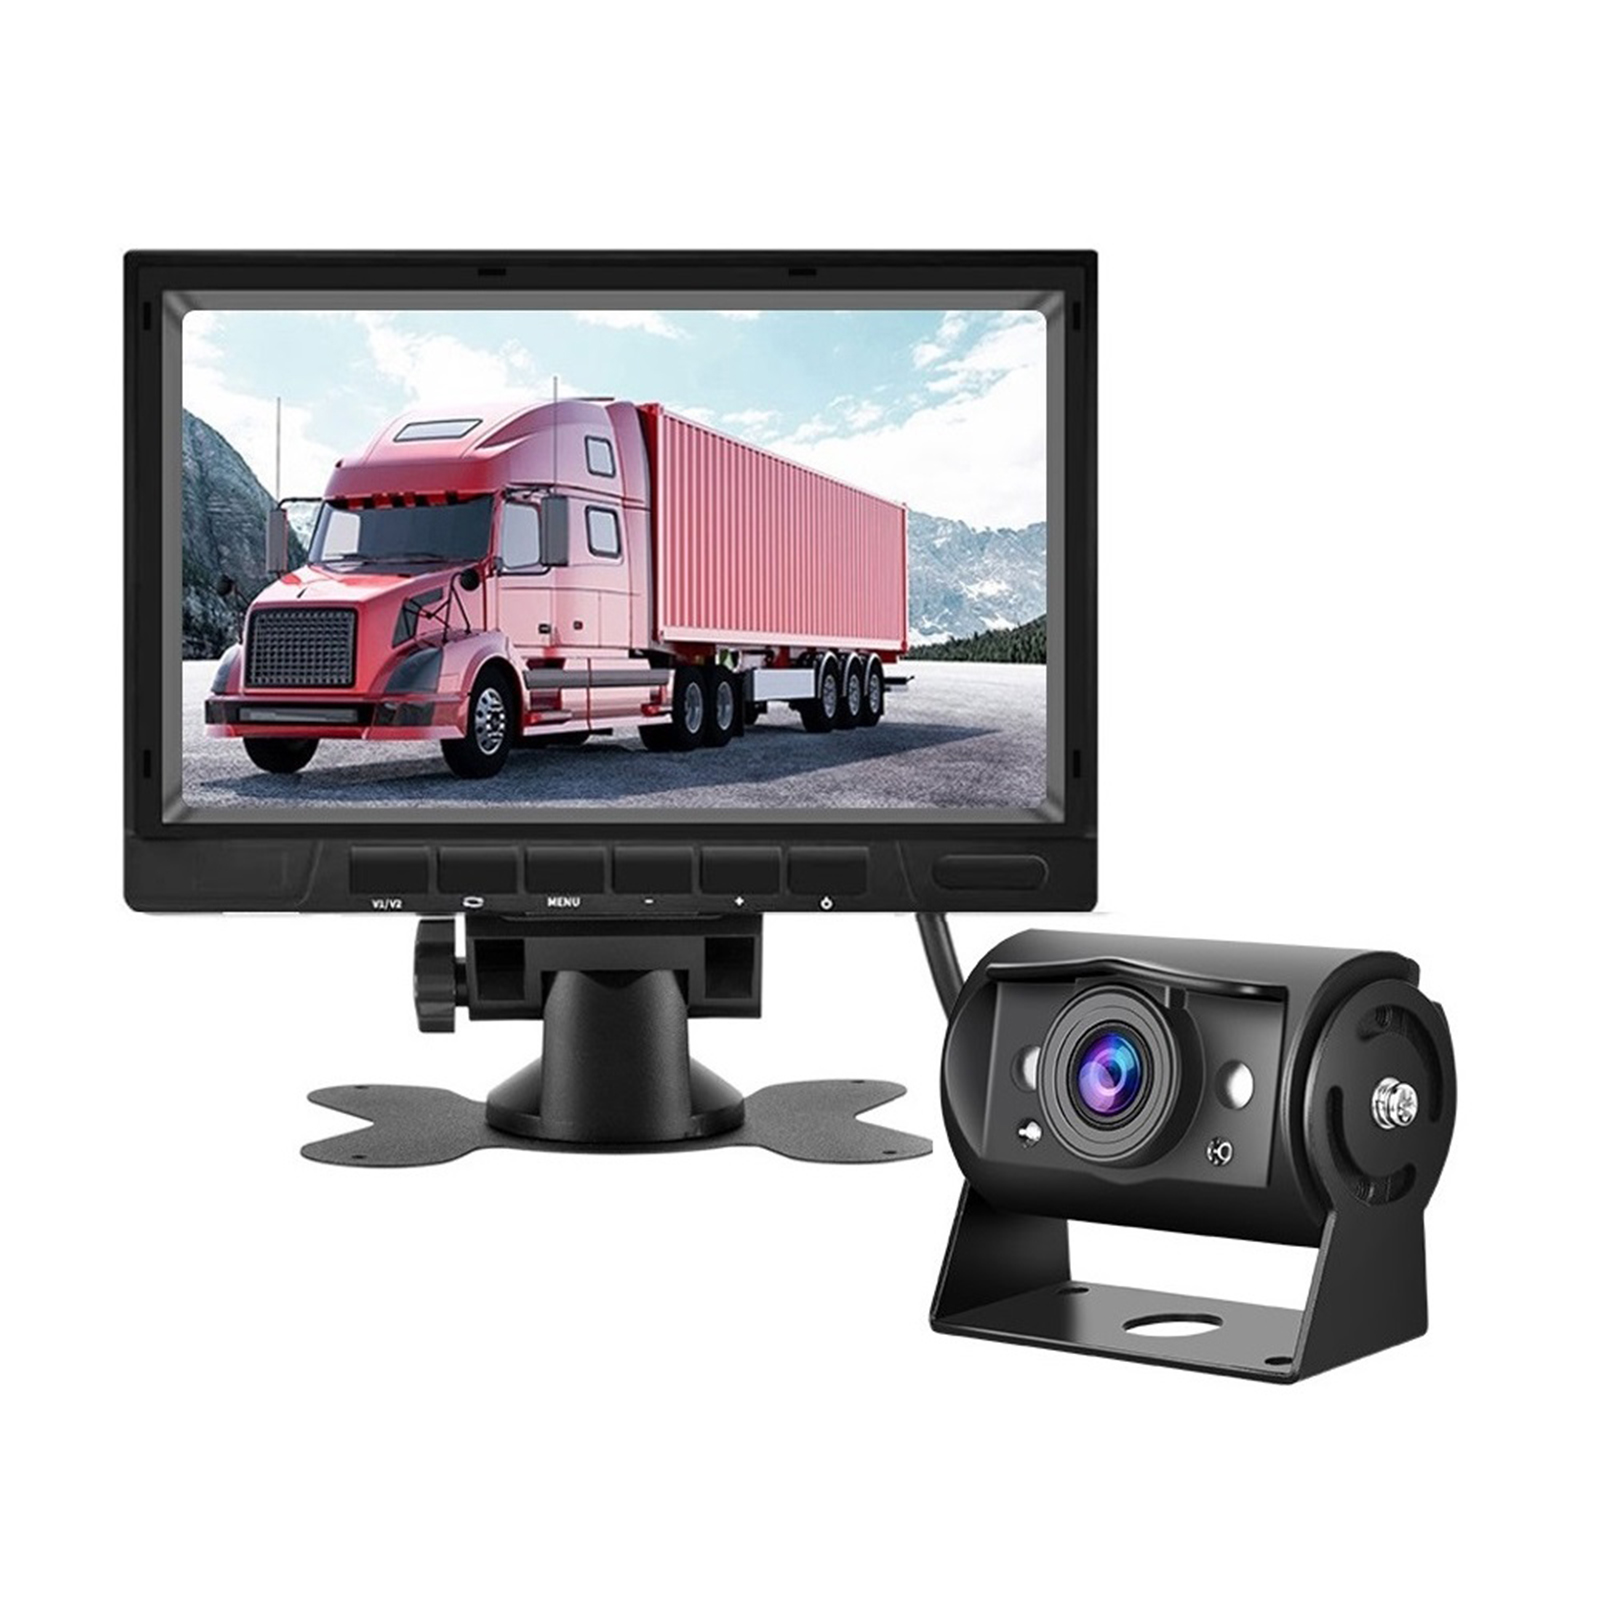 Vehicle Backup Camera 7 inch Monitor Kit Waterproof Ahd 1080p Night Vision Rear View Camera